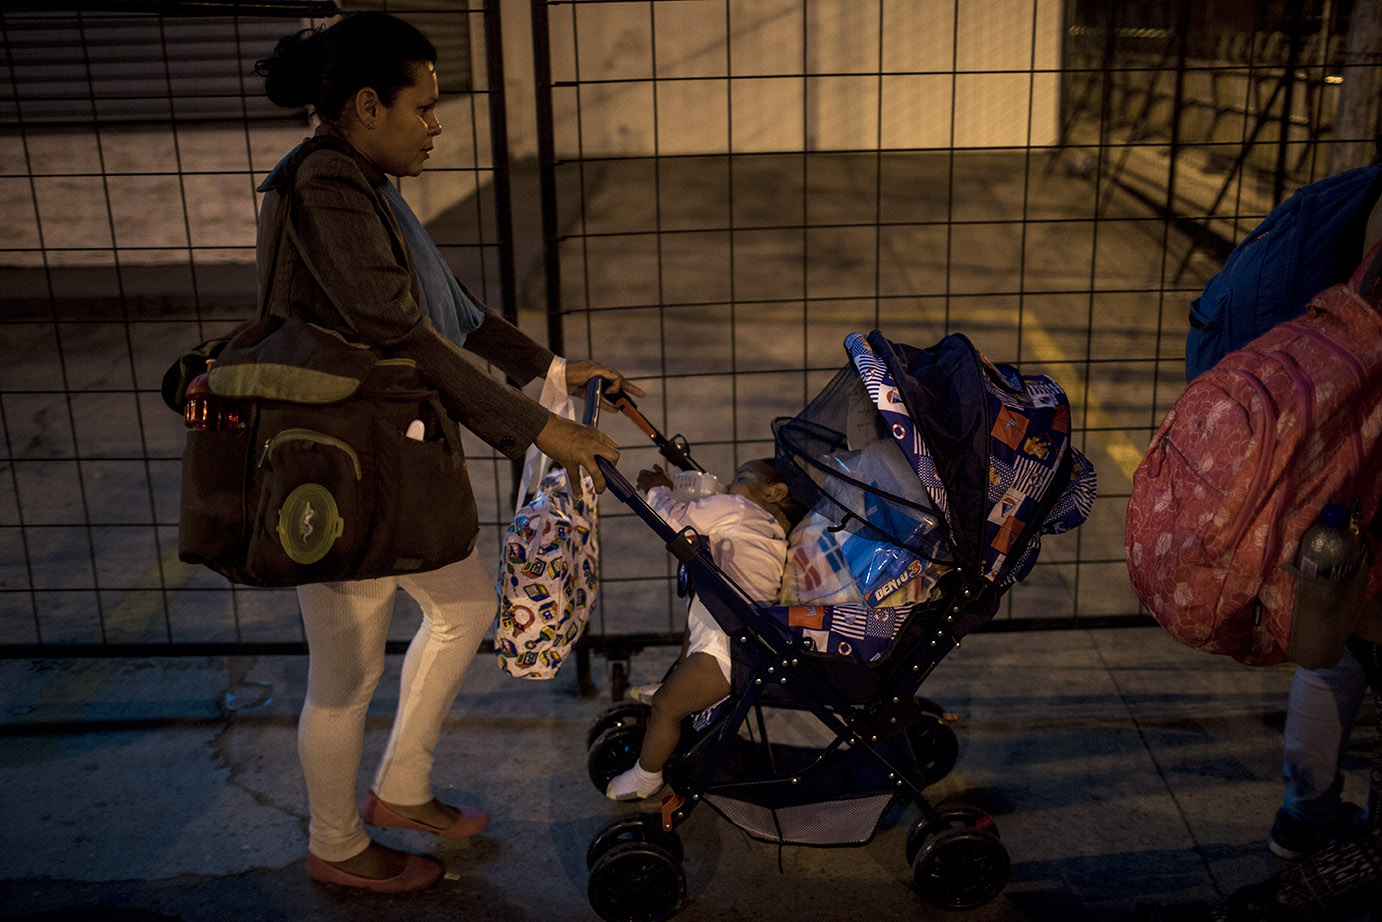 Una madre lleva la hija de pocos meses en el carruaje, acomodada entre paquetes y ropa